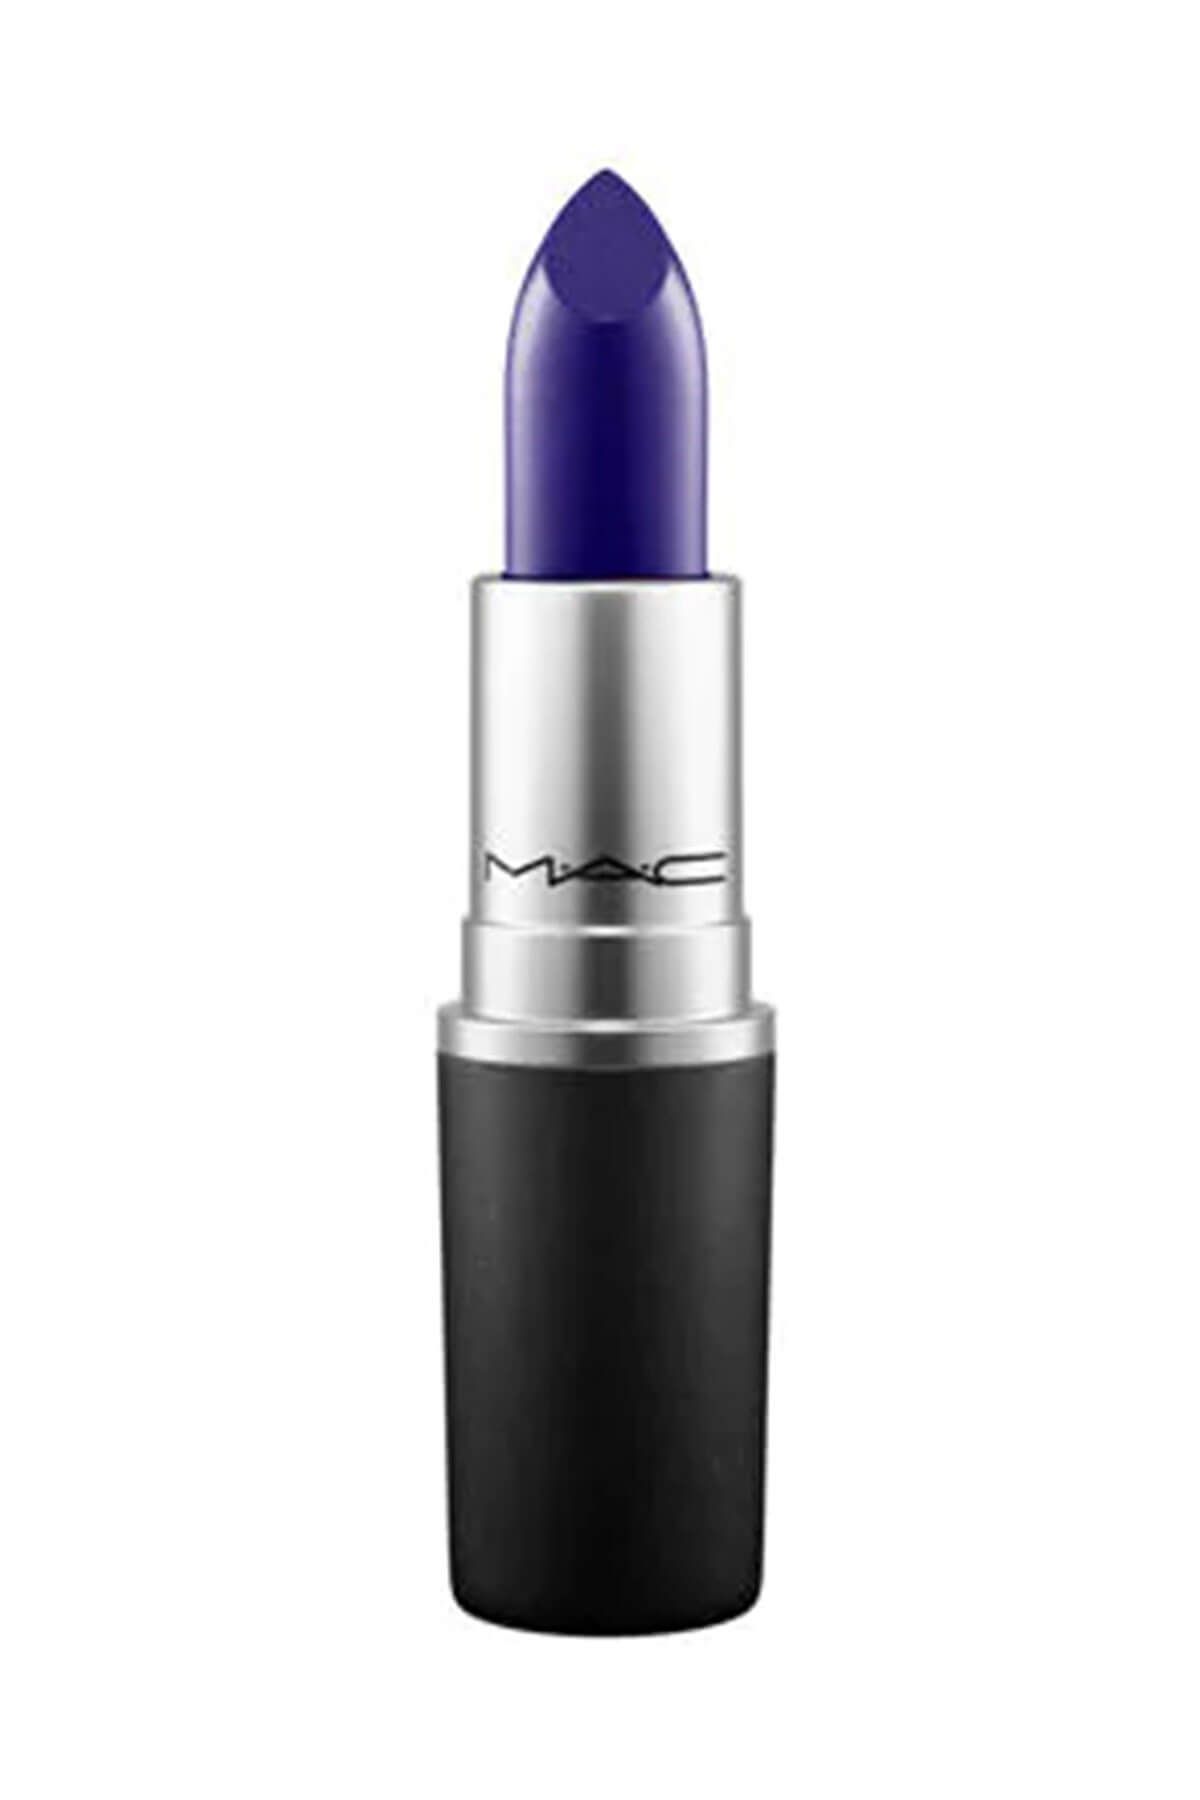 Mac Ruj - Lipstick Matte Royal 3 g 773602388028